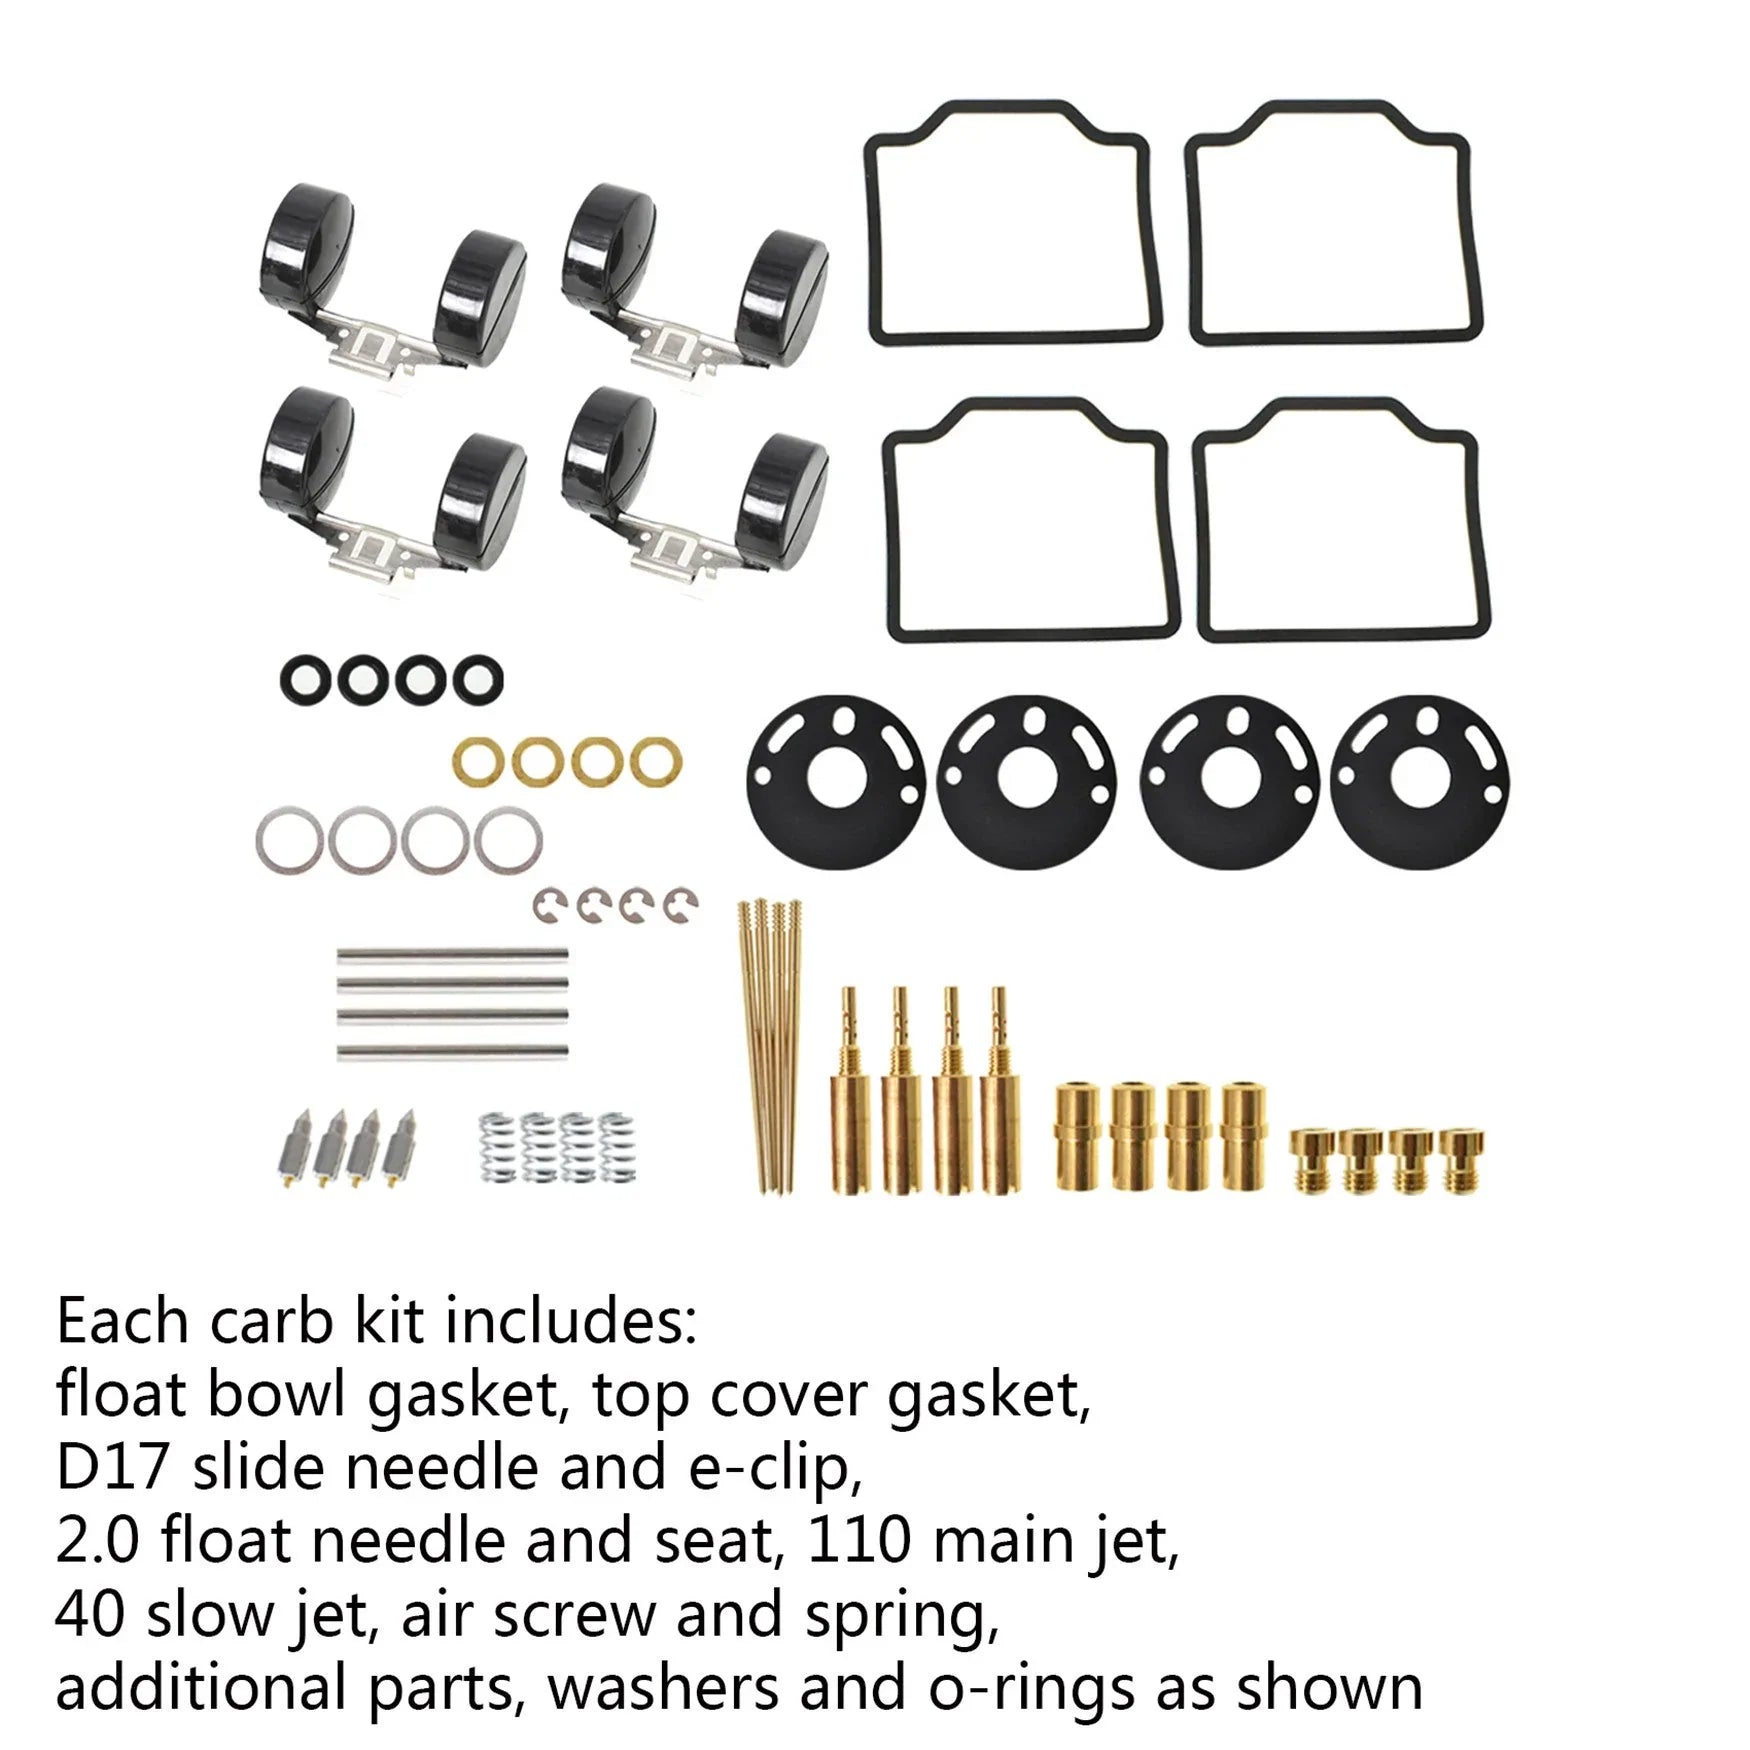 Labwork 4-Pack Carburetor Carb Repair Rebuild Kits Replacement for Honda CB750 1969-1974, CB750K 1975-1976 LAB WORK MOTO